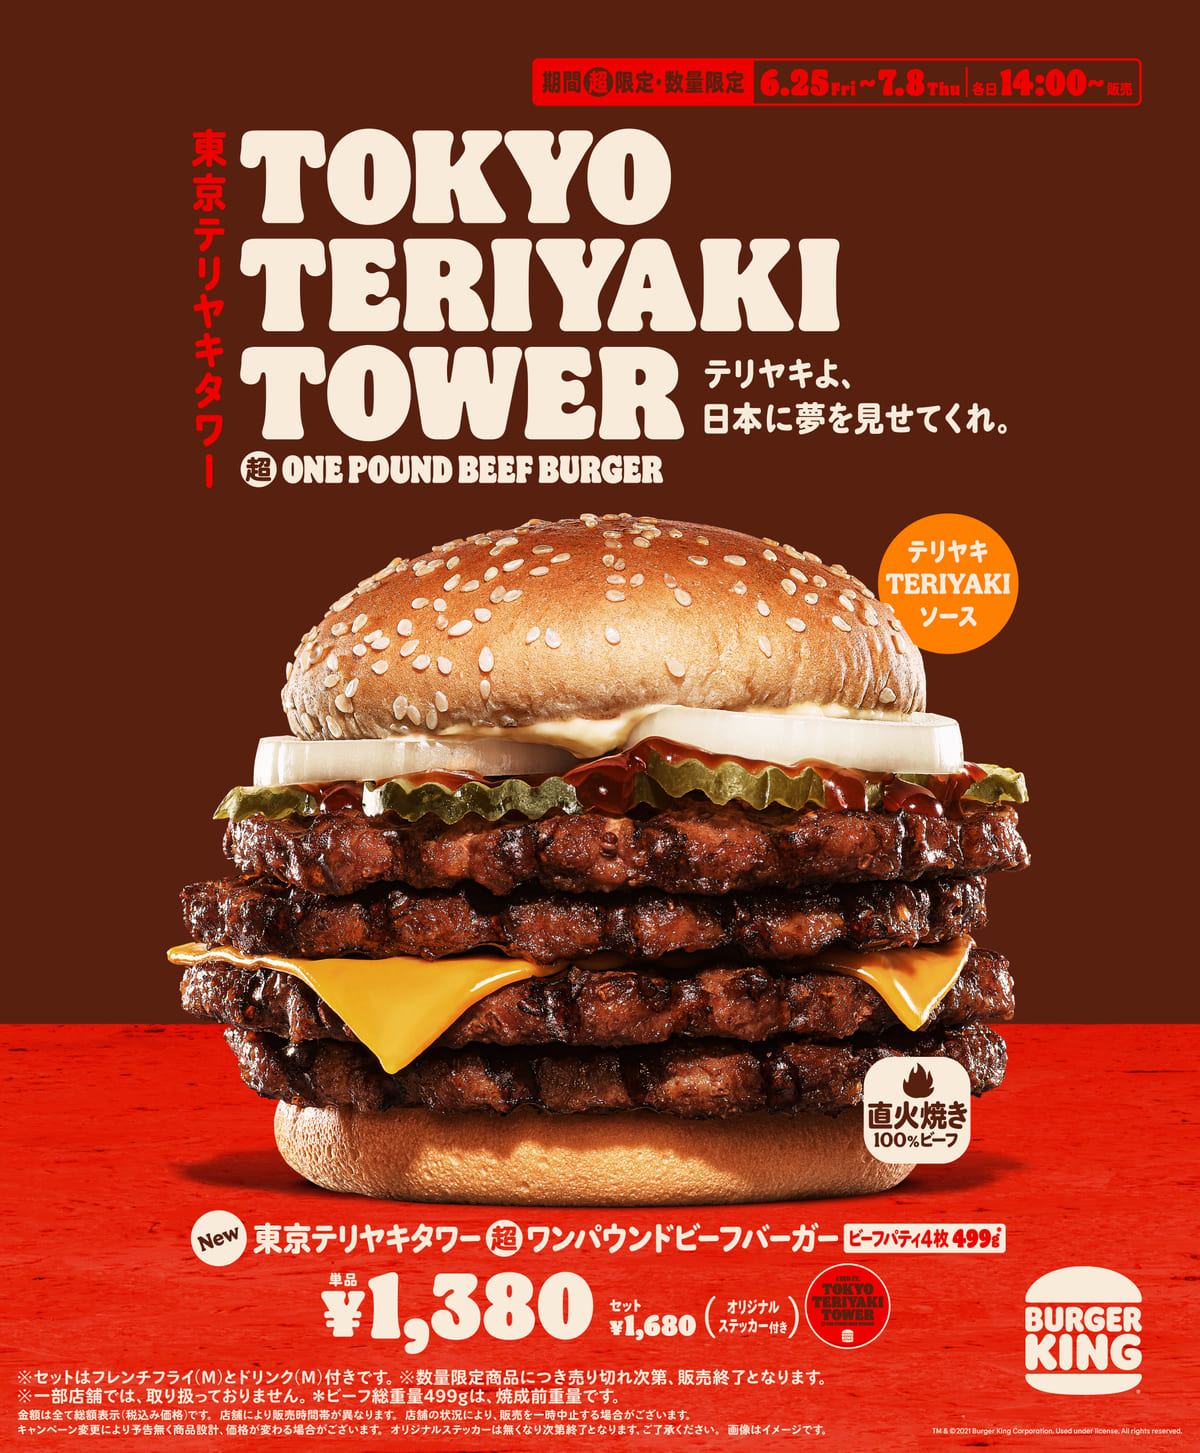 バーガーキング『東京テリヤキタワー超ワンパウンドビーフバーガー』